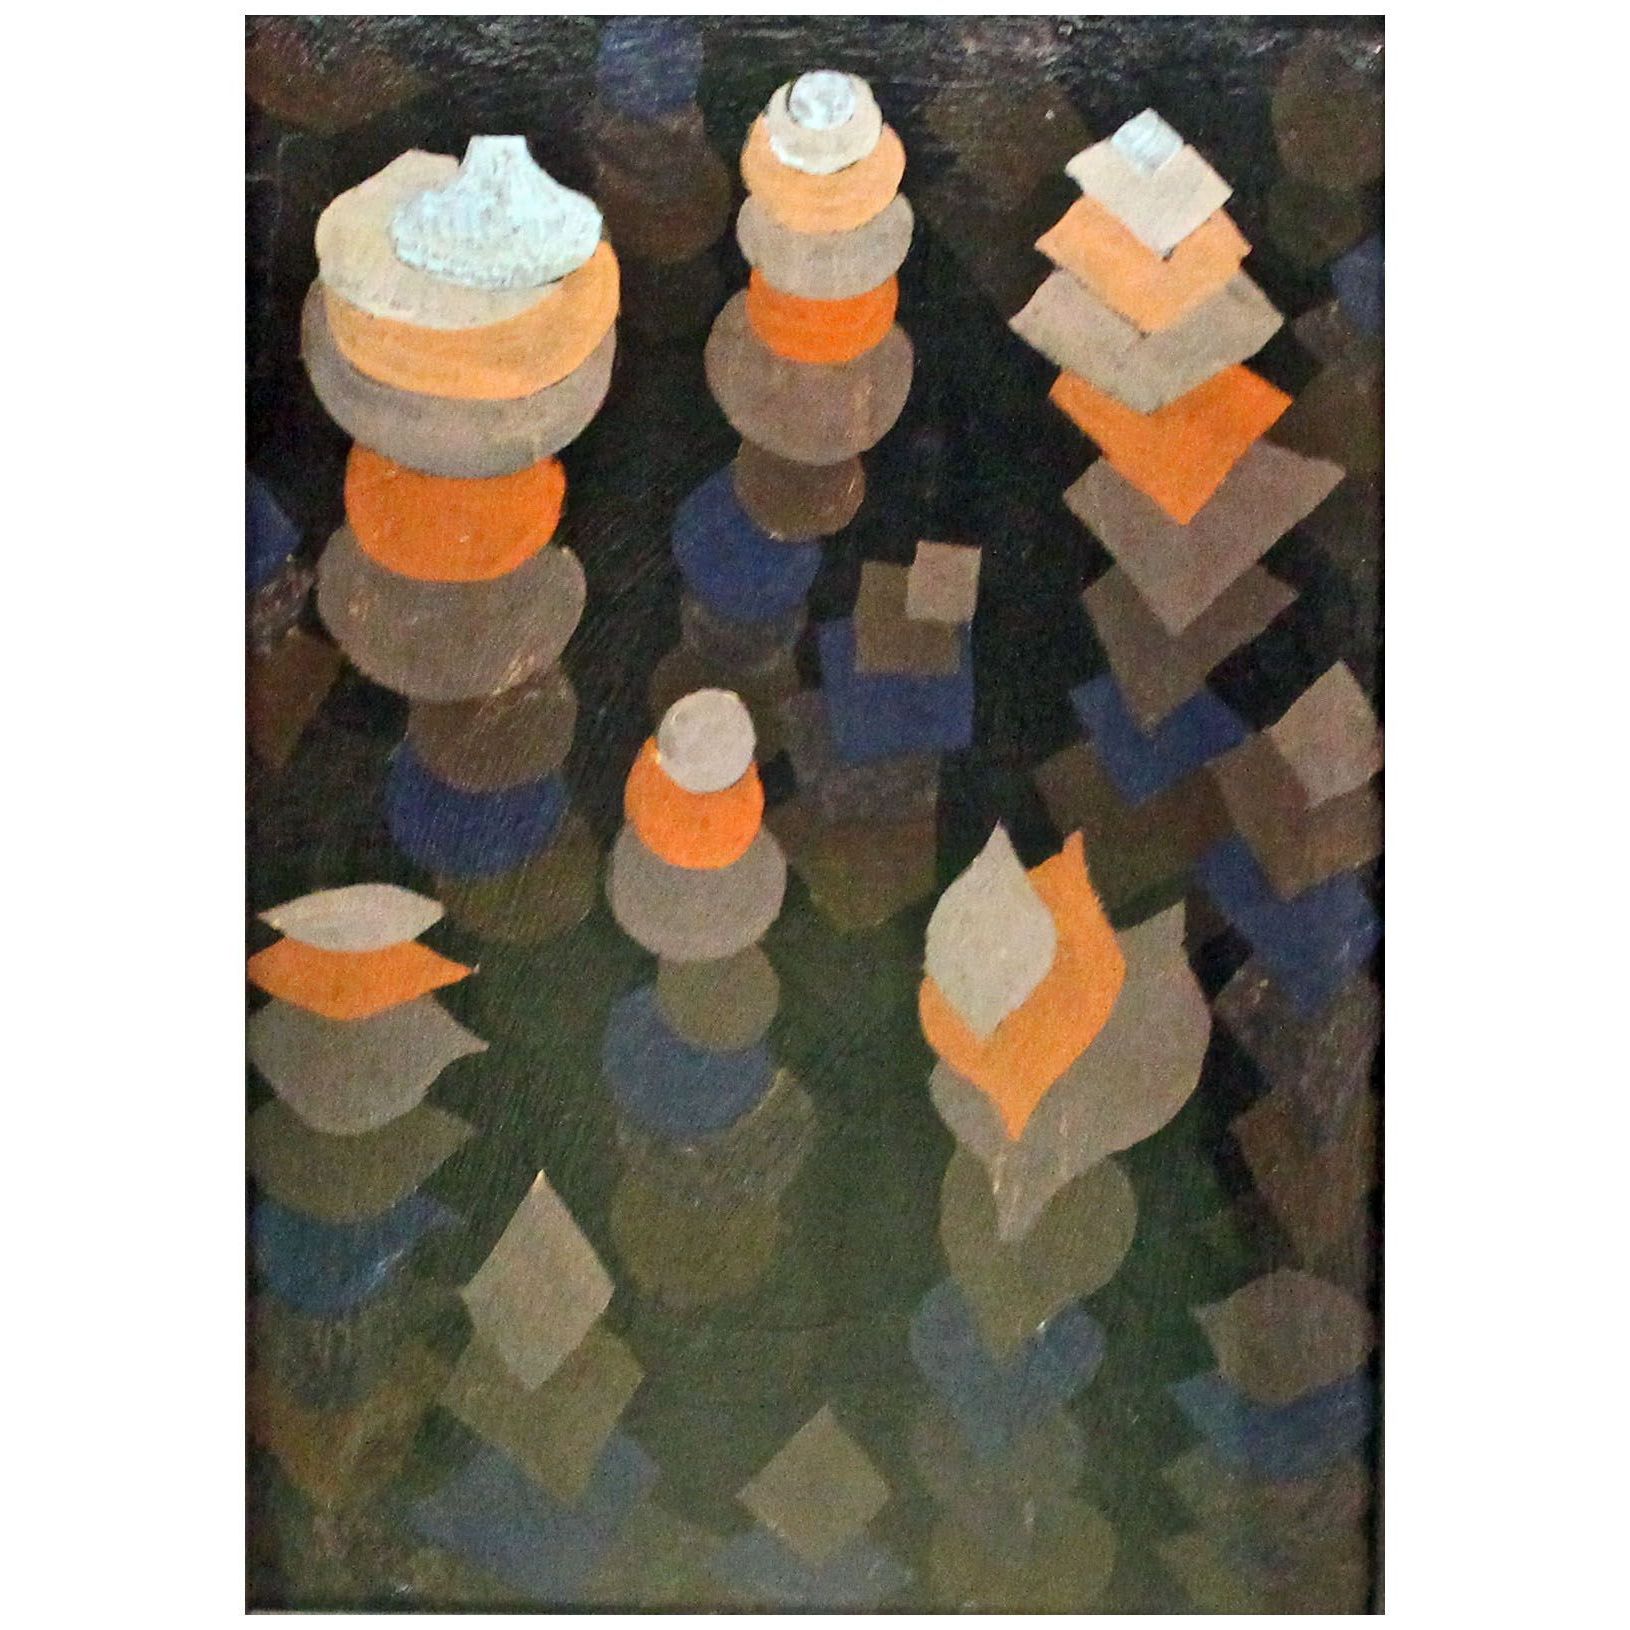 Paul Klee. Wachstum der Nachtpflanzen. 1922. Neue Pinakothek, Munchen